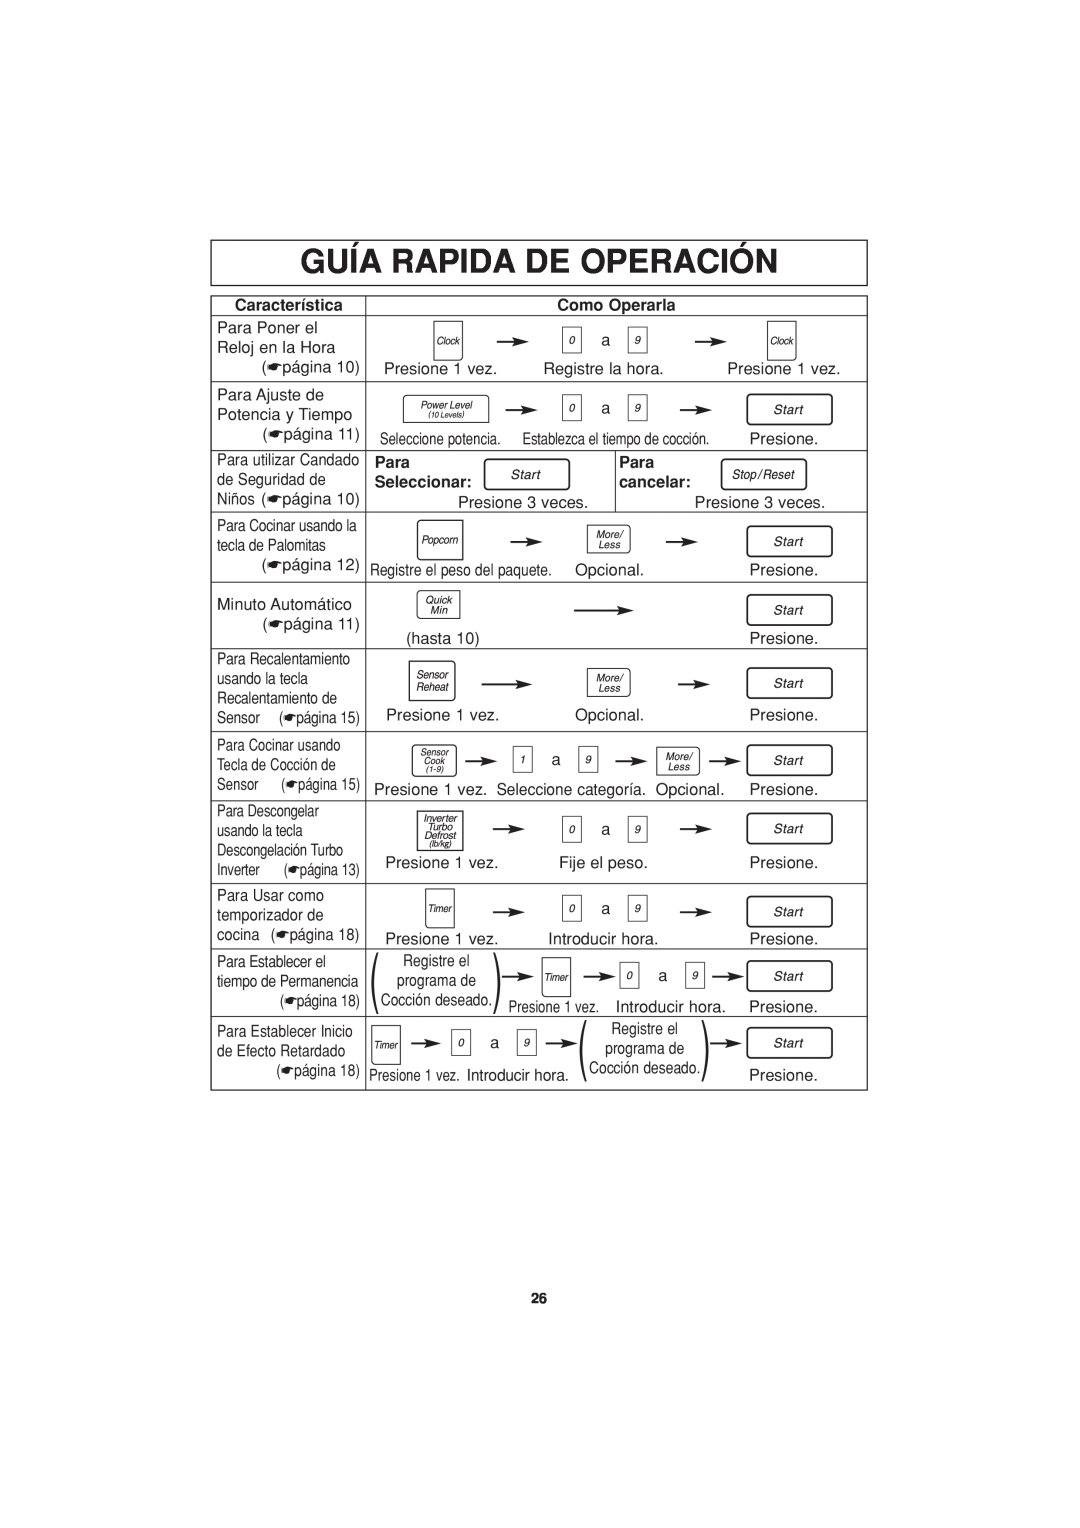 Panasonic NN-H624 Guía Rapida De Operación, Característica, Como Operarla, Para, Seleccionar, cancelar 